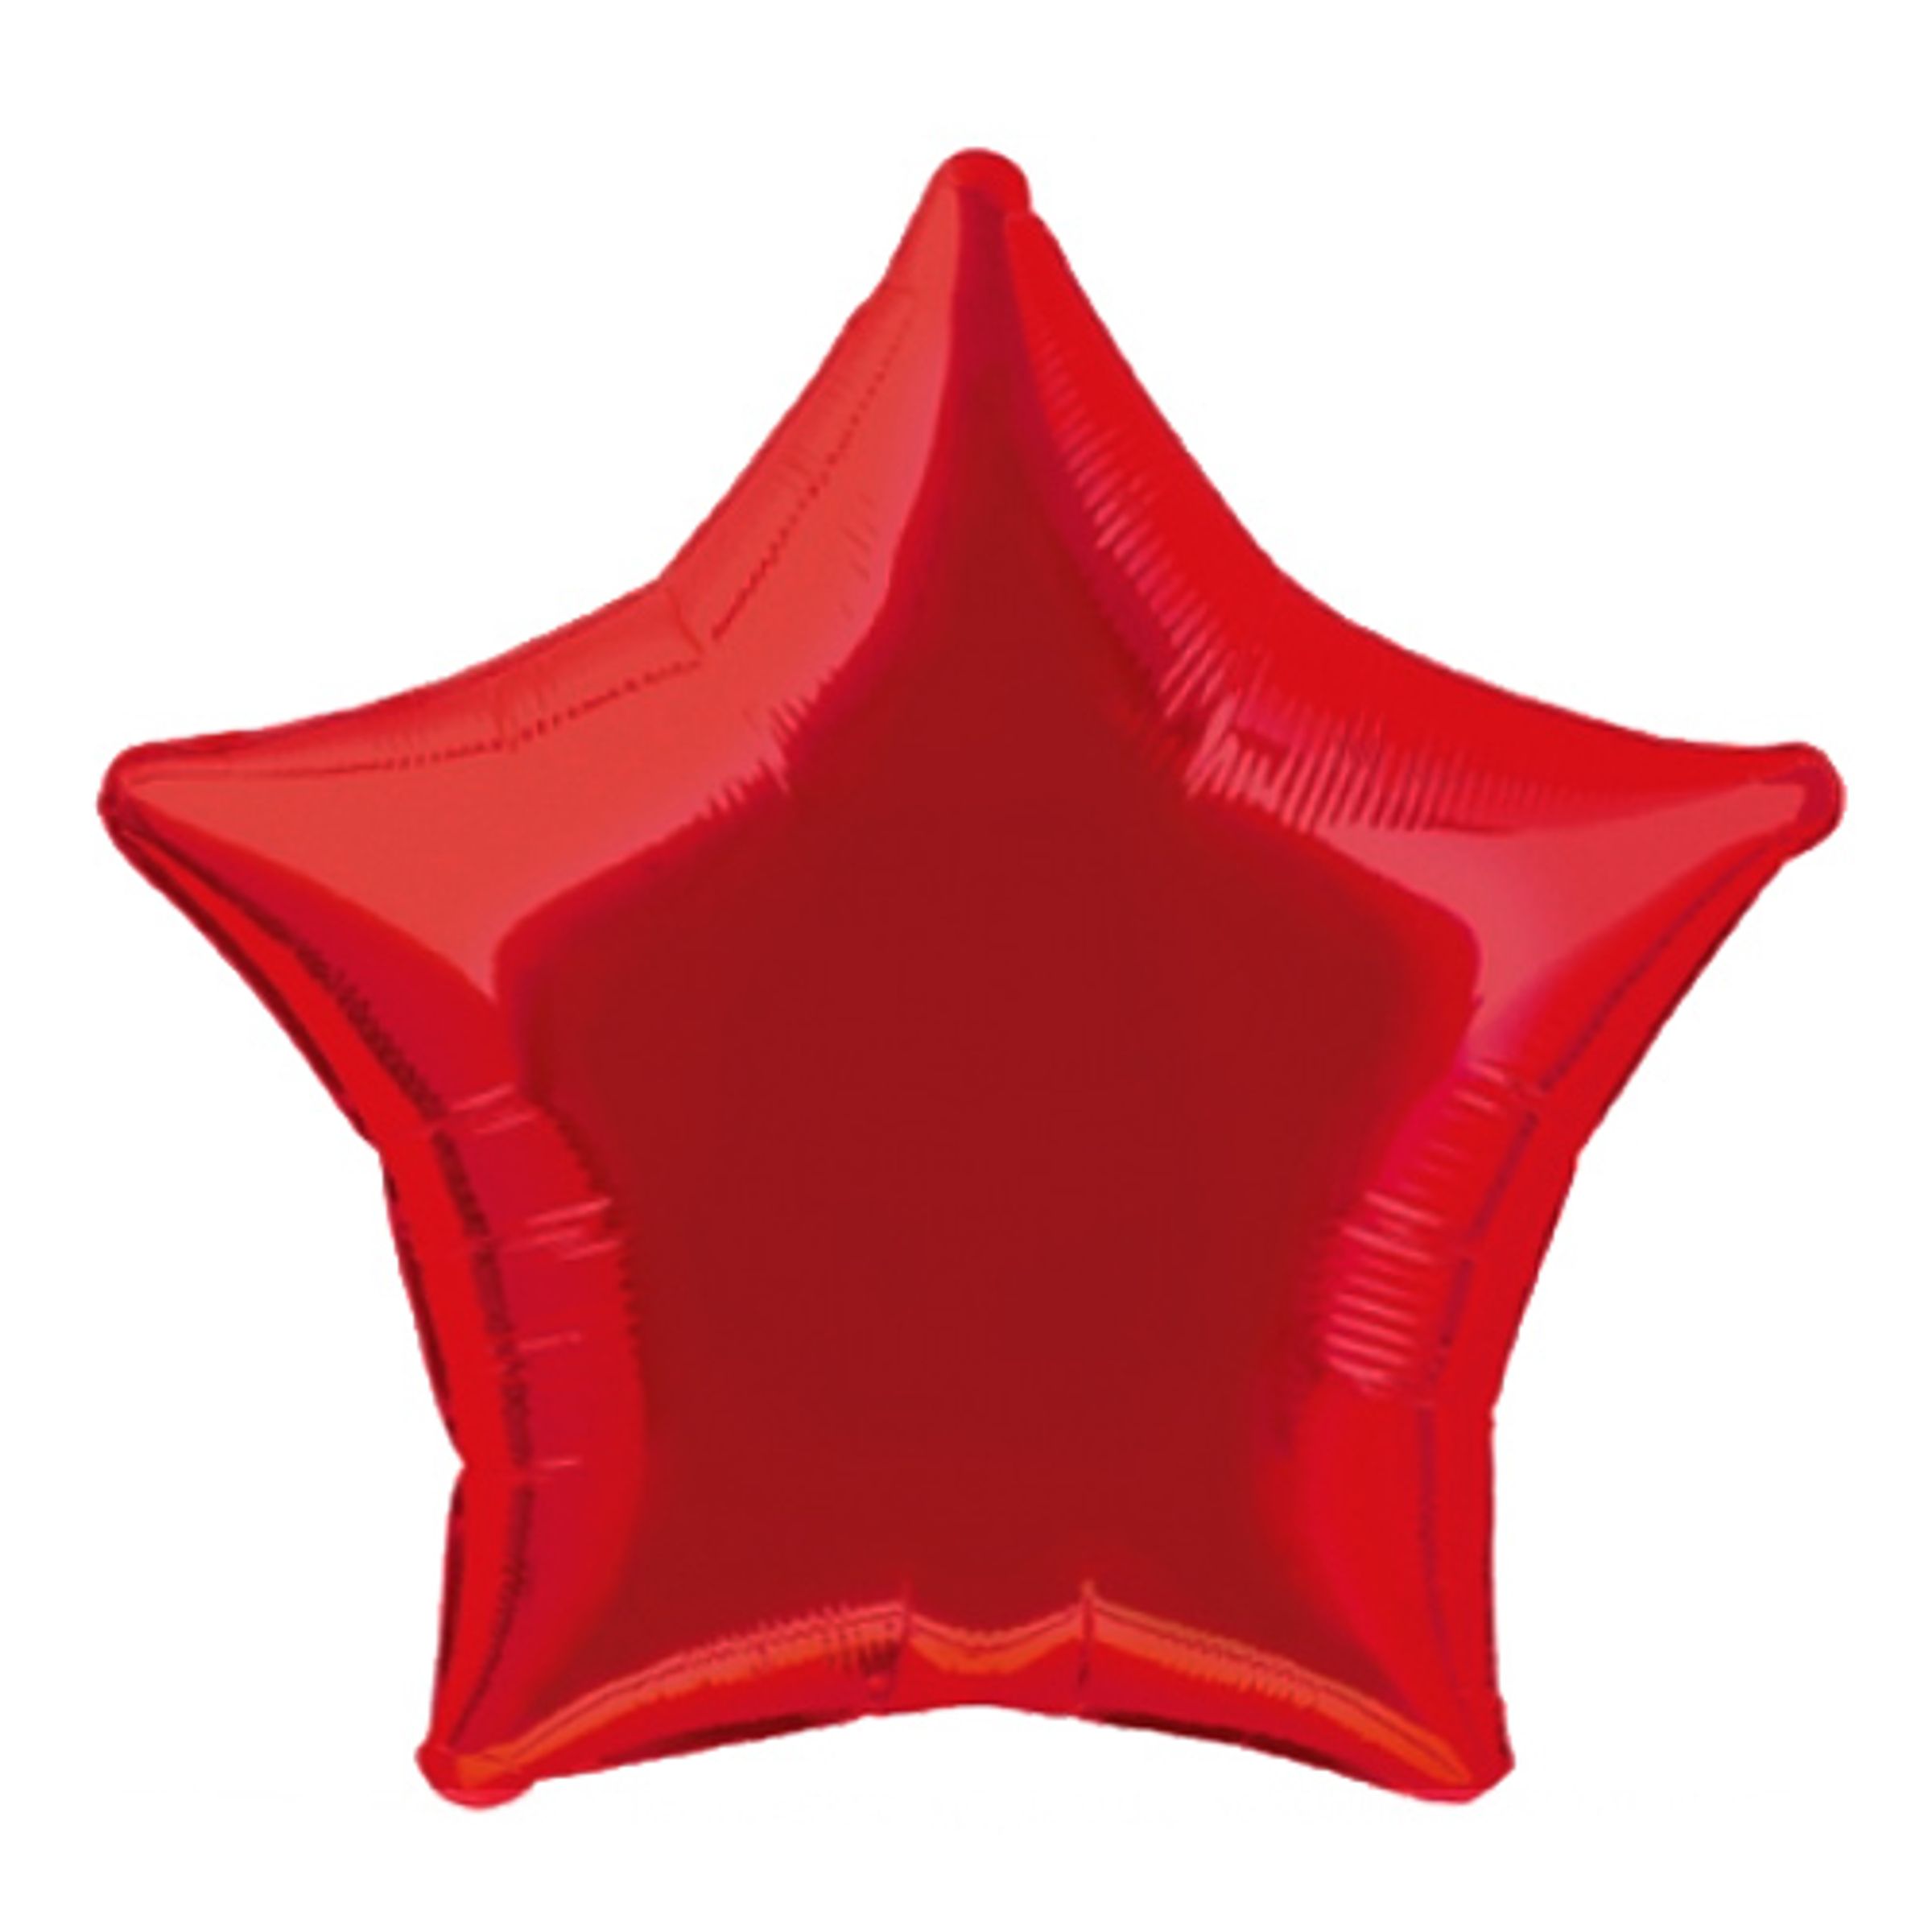 Folieballong Stjärna Röd